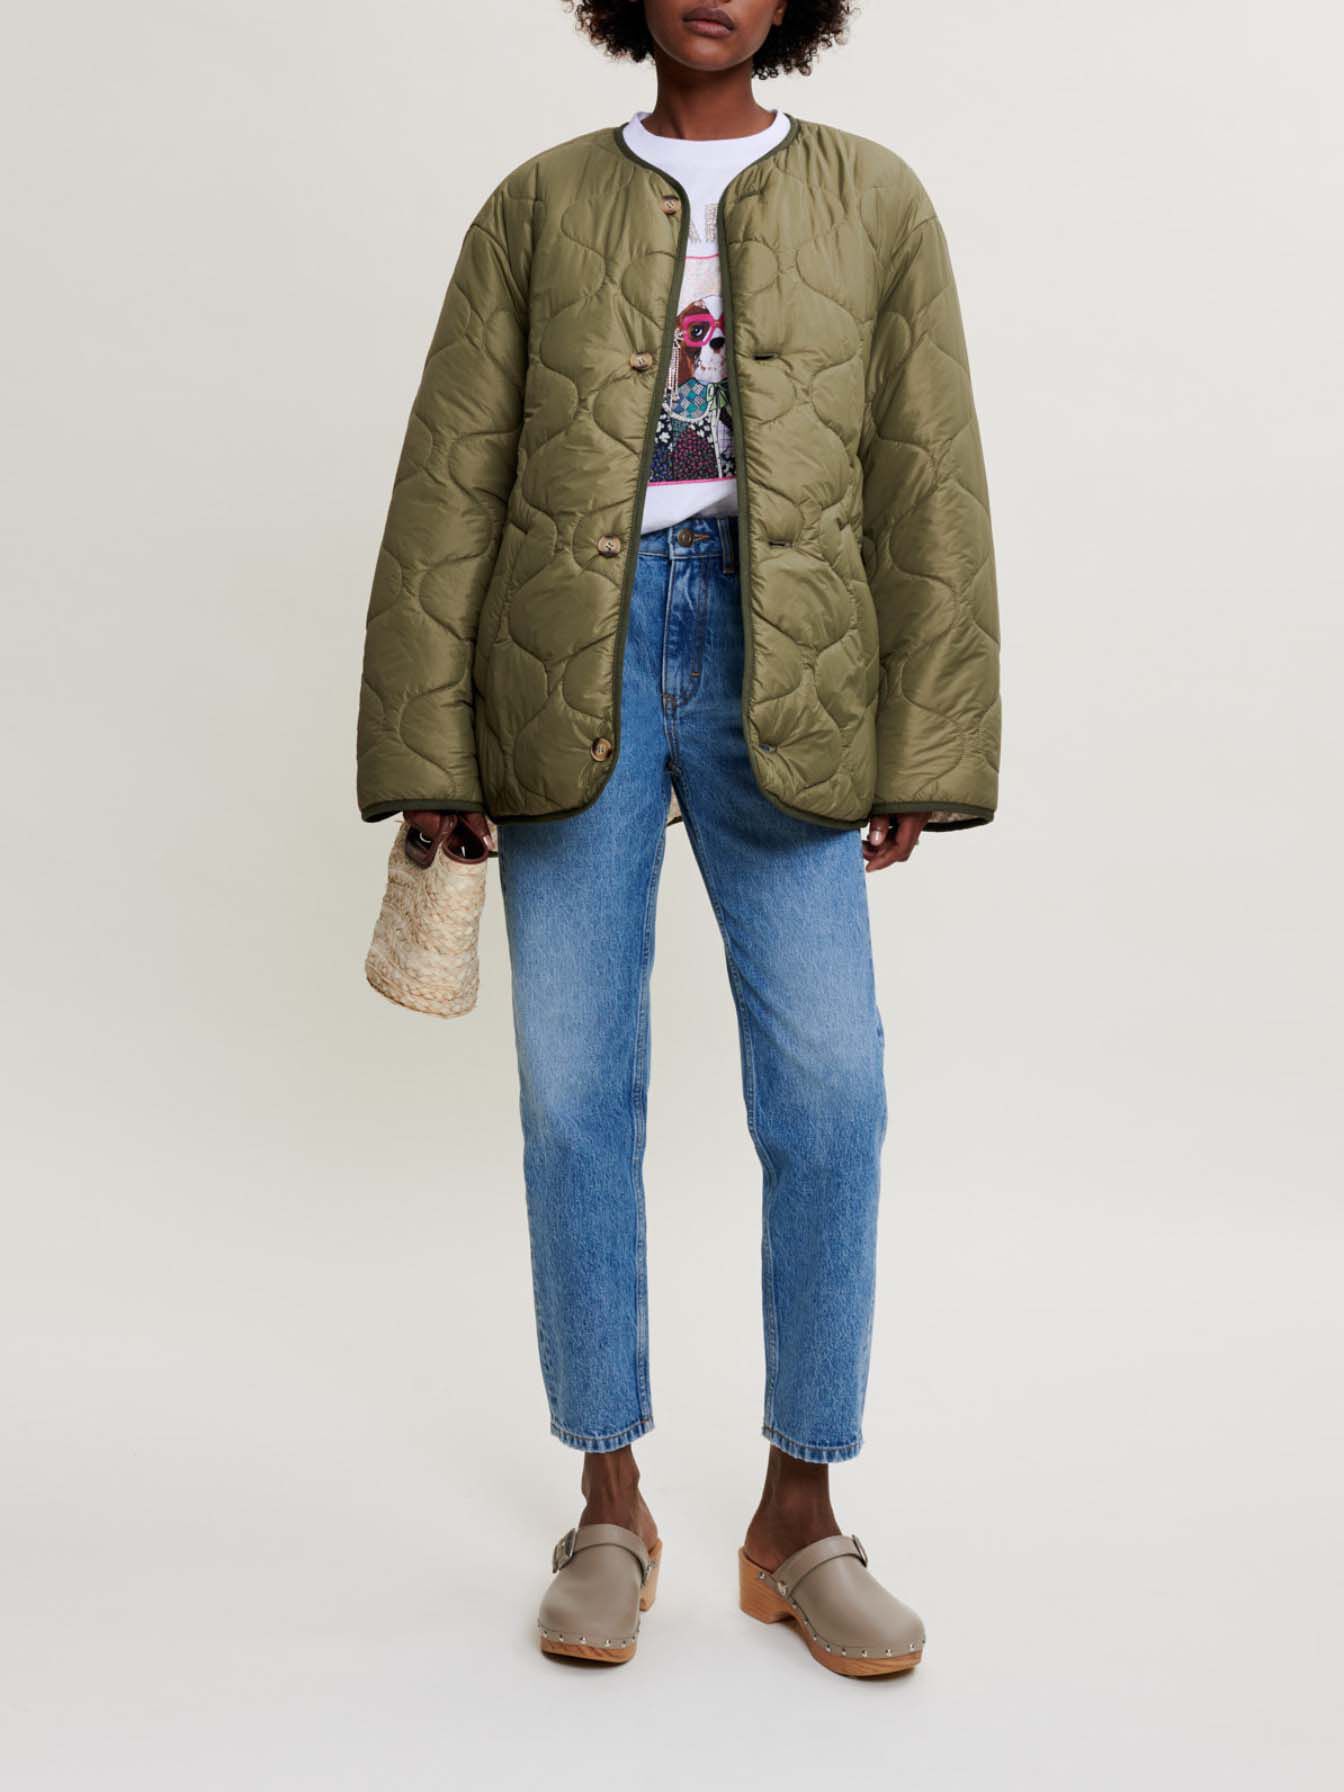 Coats & Jackets - Women Clothing | Maje.com